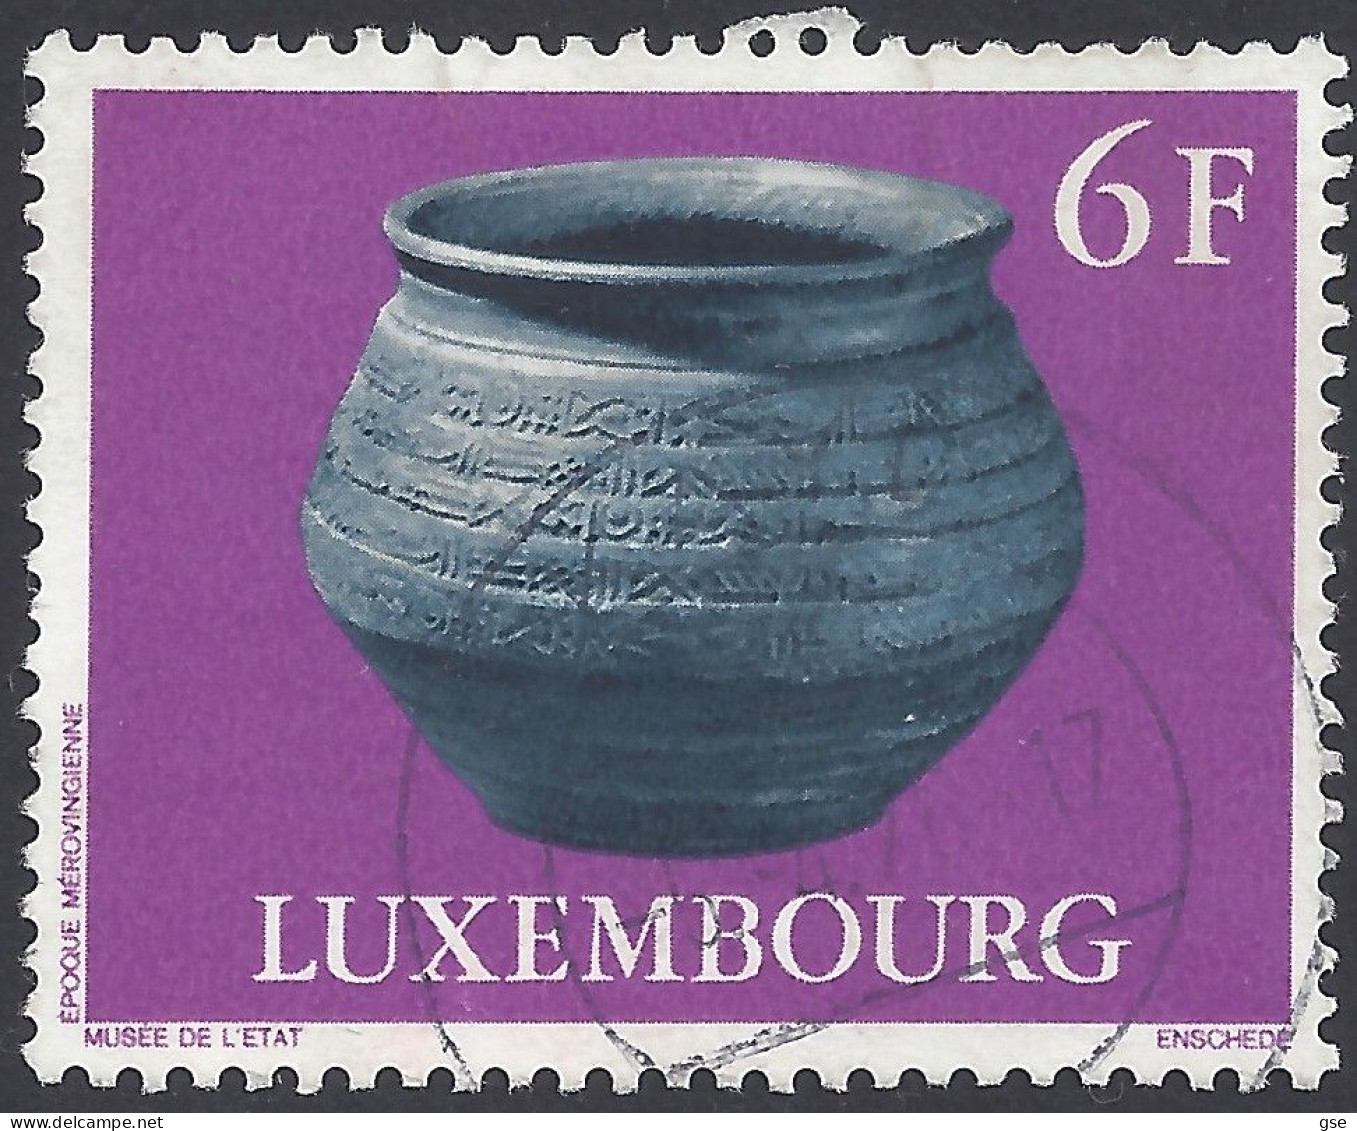 LUSSEMBURGO 1976 - Yvert 876° - Ceramica | - Usati